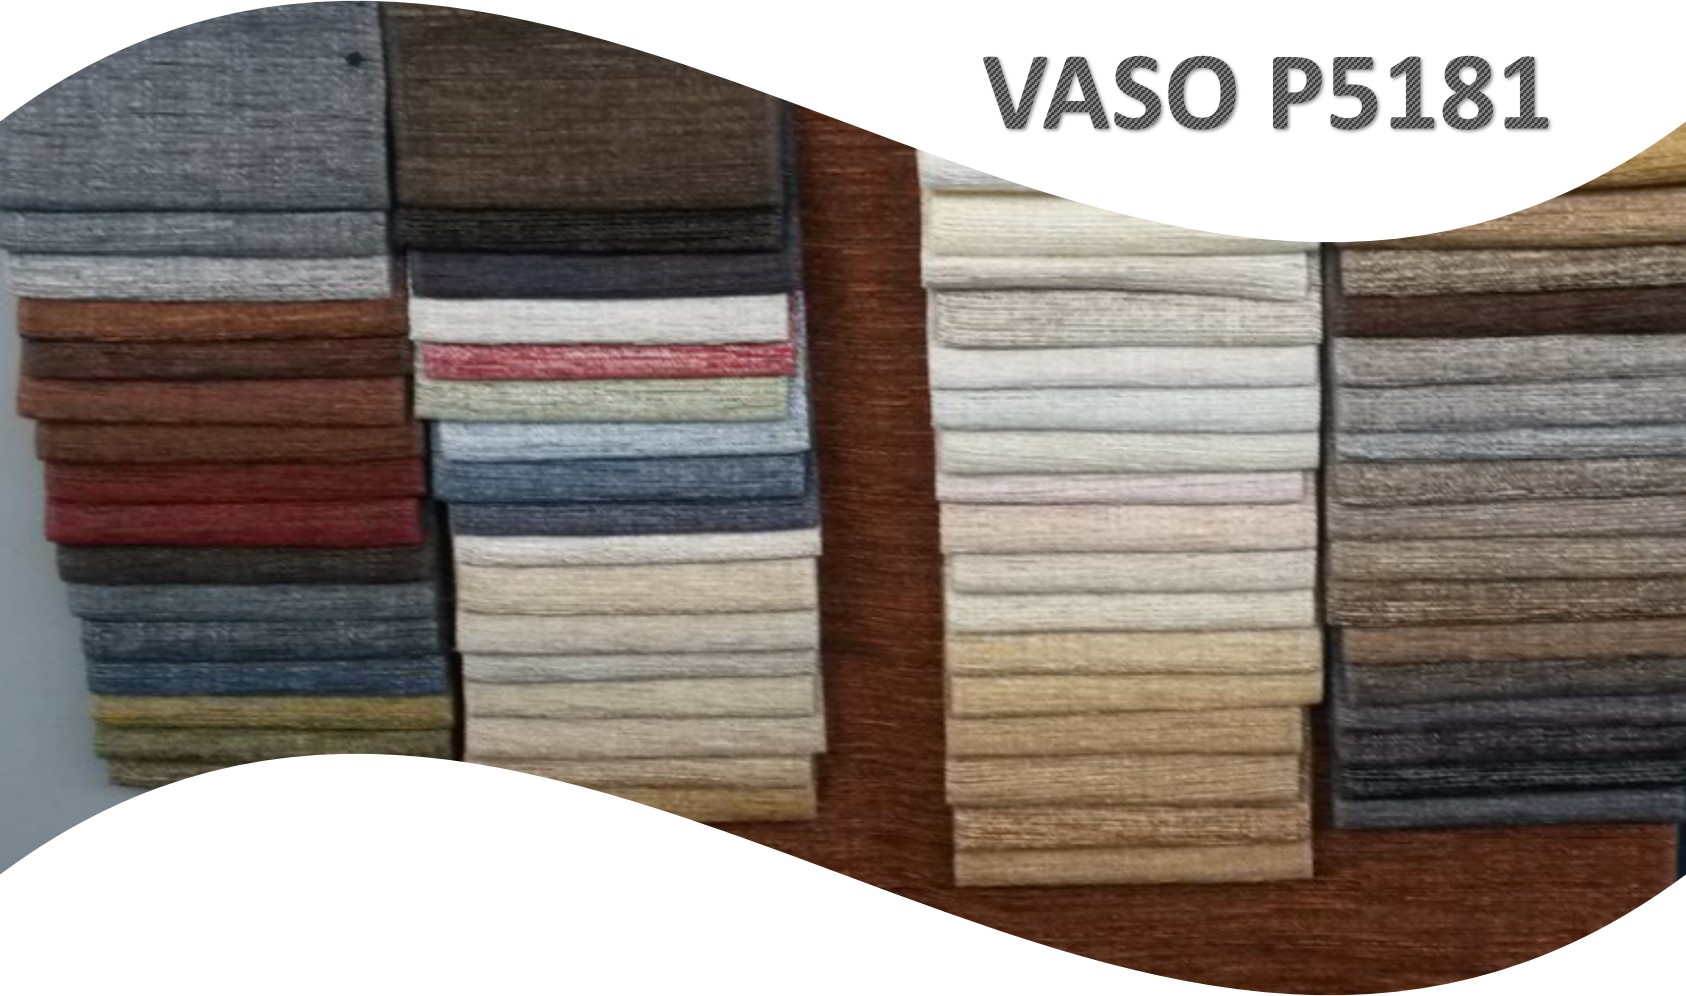 Vaso P5181